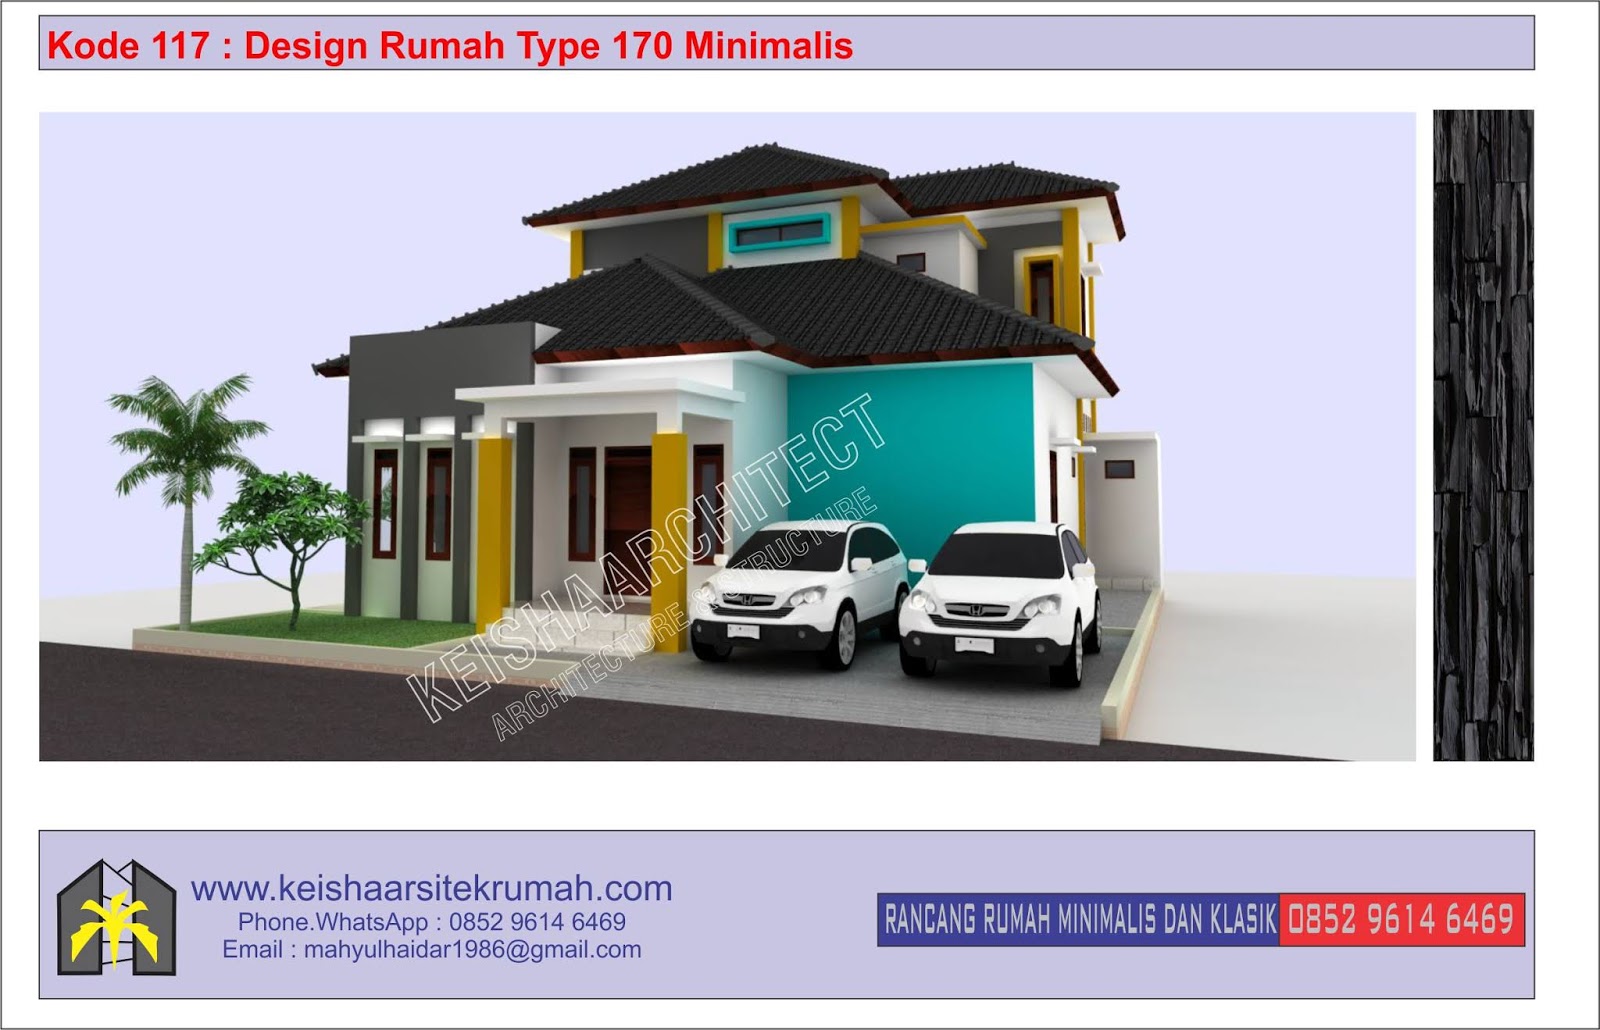 Kode 117 Design Rumah Type 170 Minimalis Lokasi Ulee Kareng